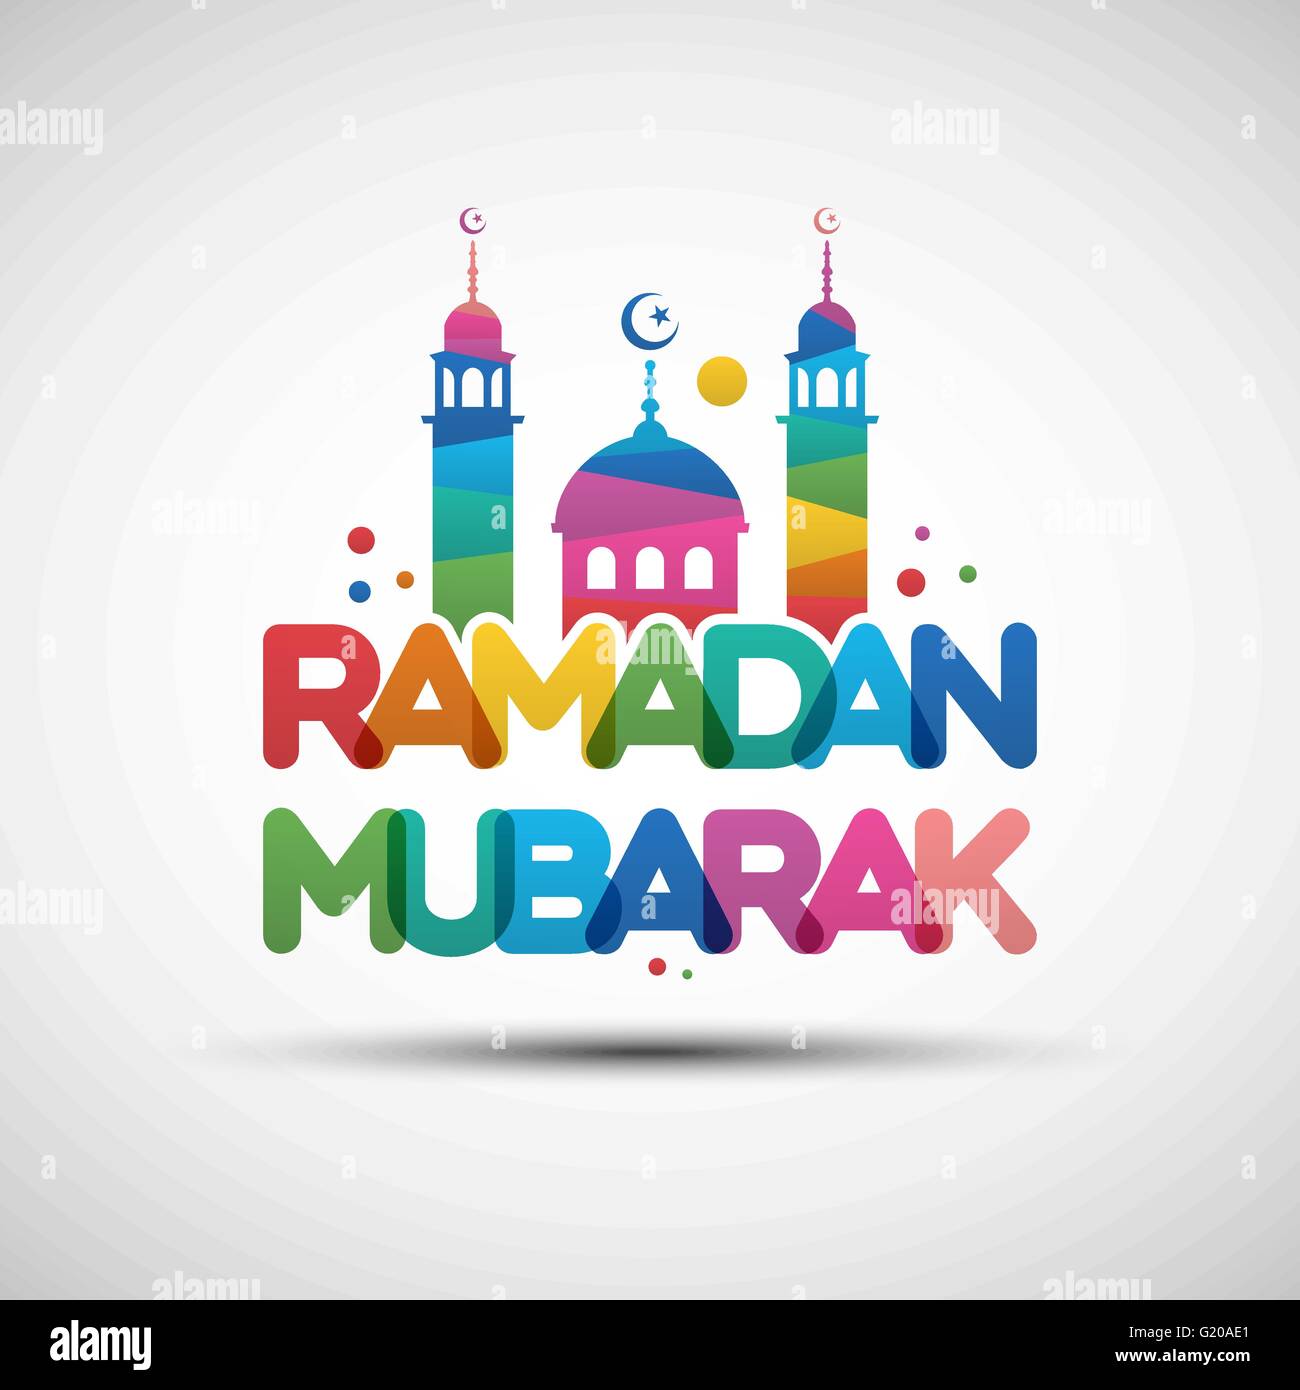 Illustrazione Vettoriale di Ramadan Mubarak. Biglietto di auguri con design multicolore creativa testo trasparente Illustrazione Vettoriale